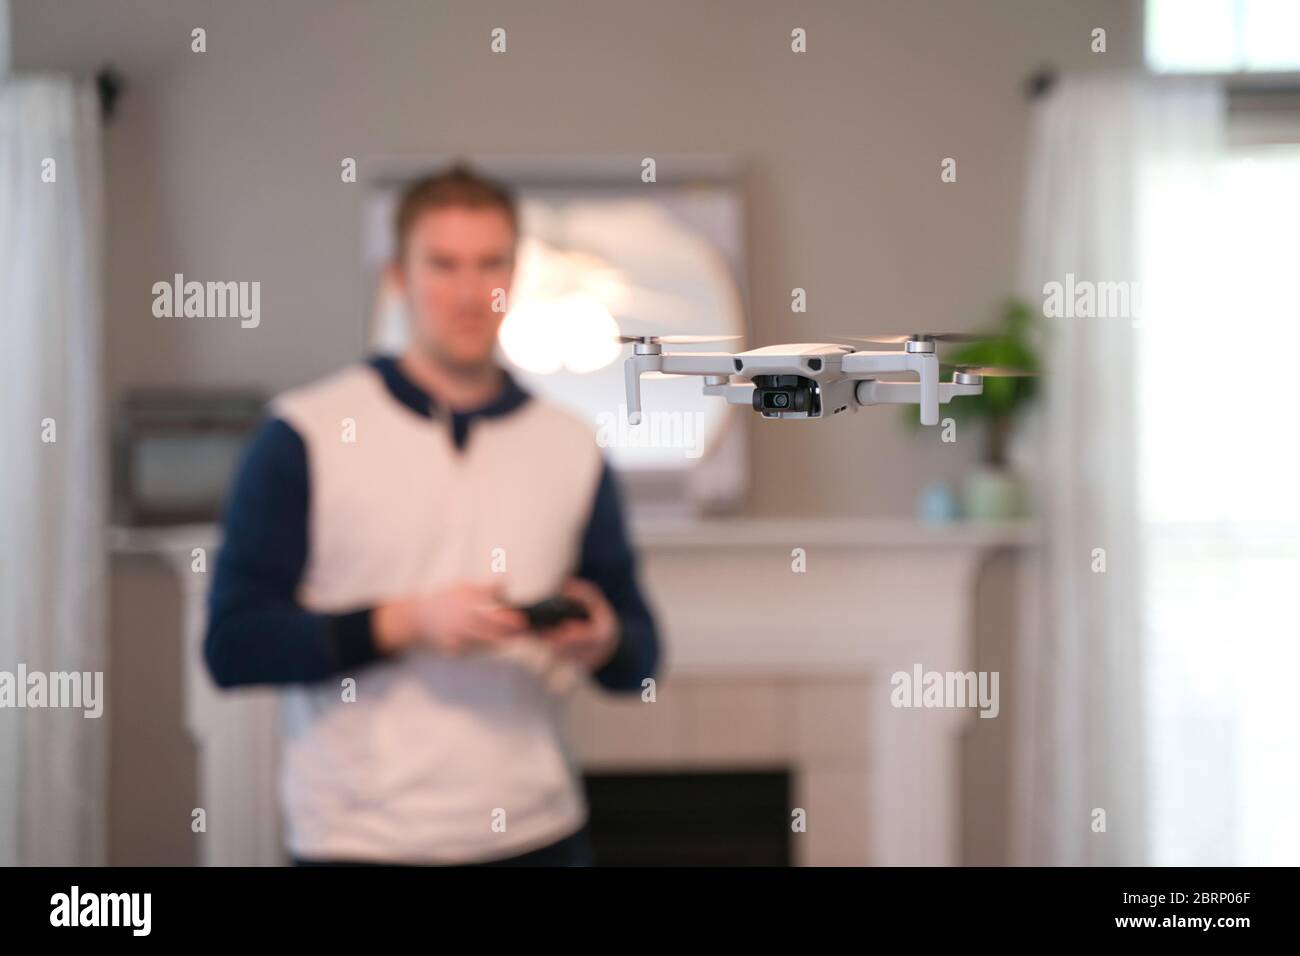 Drone volant à l'intérieur avec pilote visible en arrière-plan. Vol de drone amateur. Utilisateur portant un sweat-shirt volant drone à l'intérieur de la maison par temps froid. Blanc dr Banque D'Images